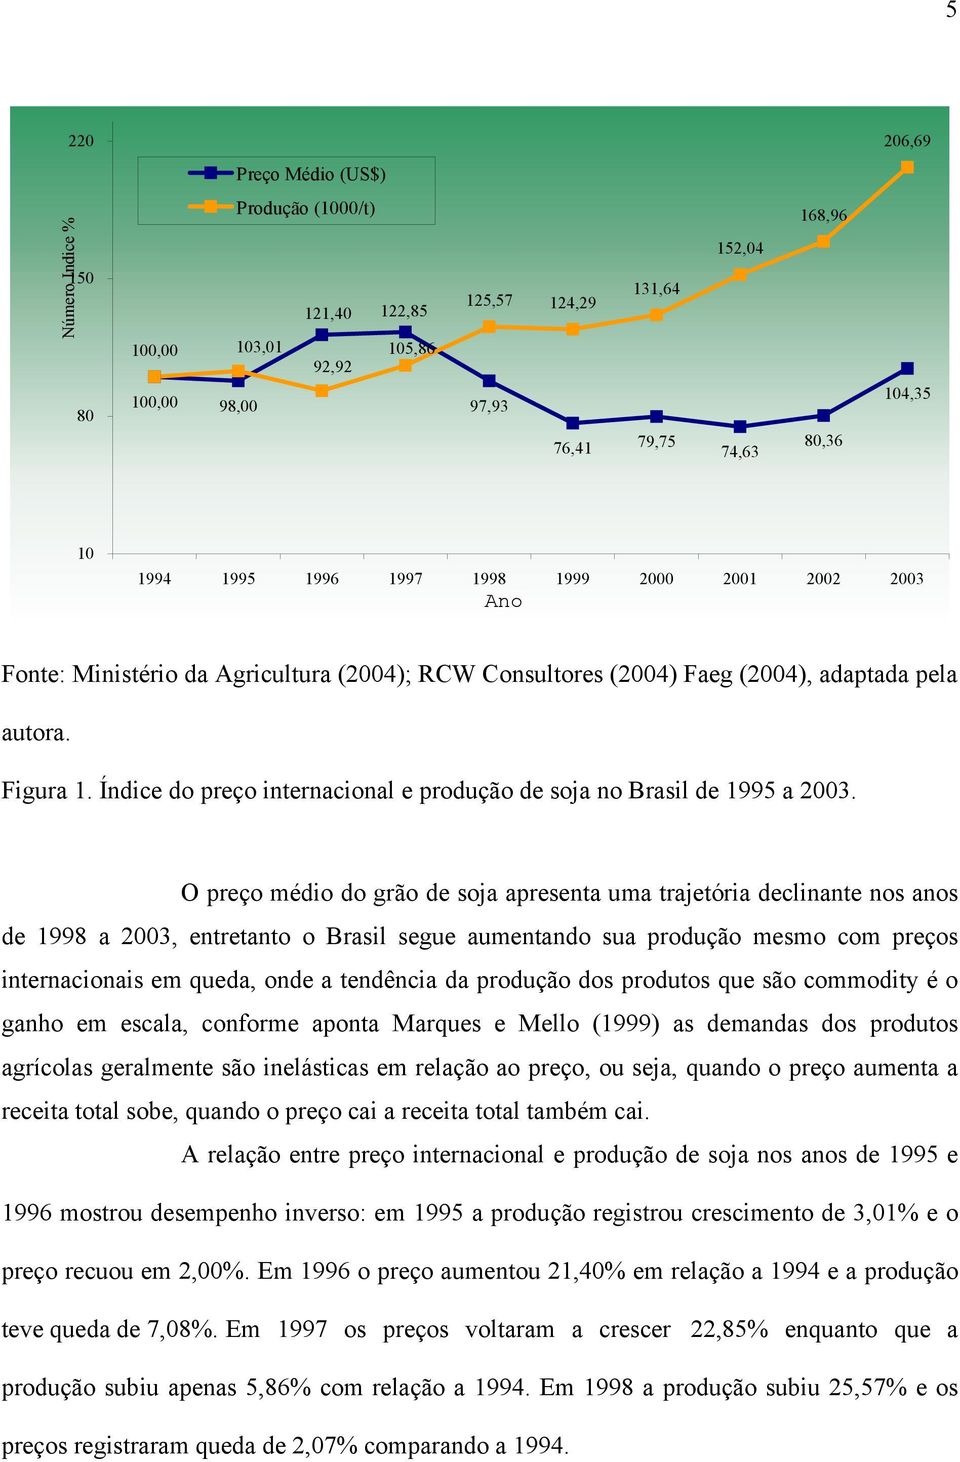 Índice do preço internacional e produção de soja no Brasil de 1995 a 2003.